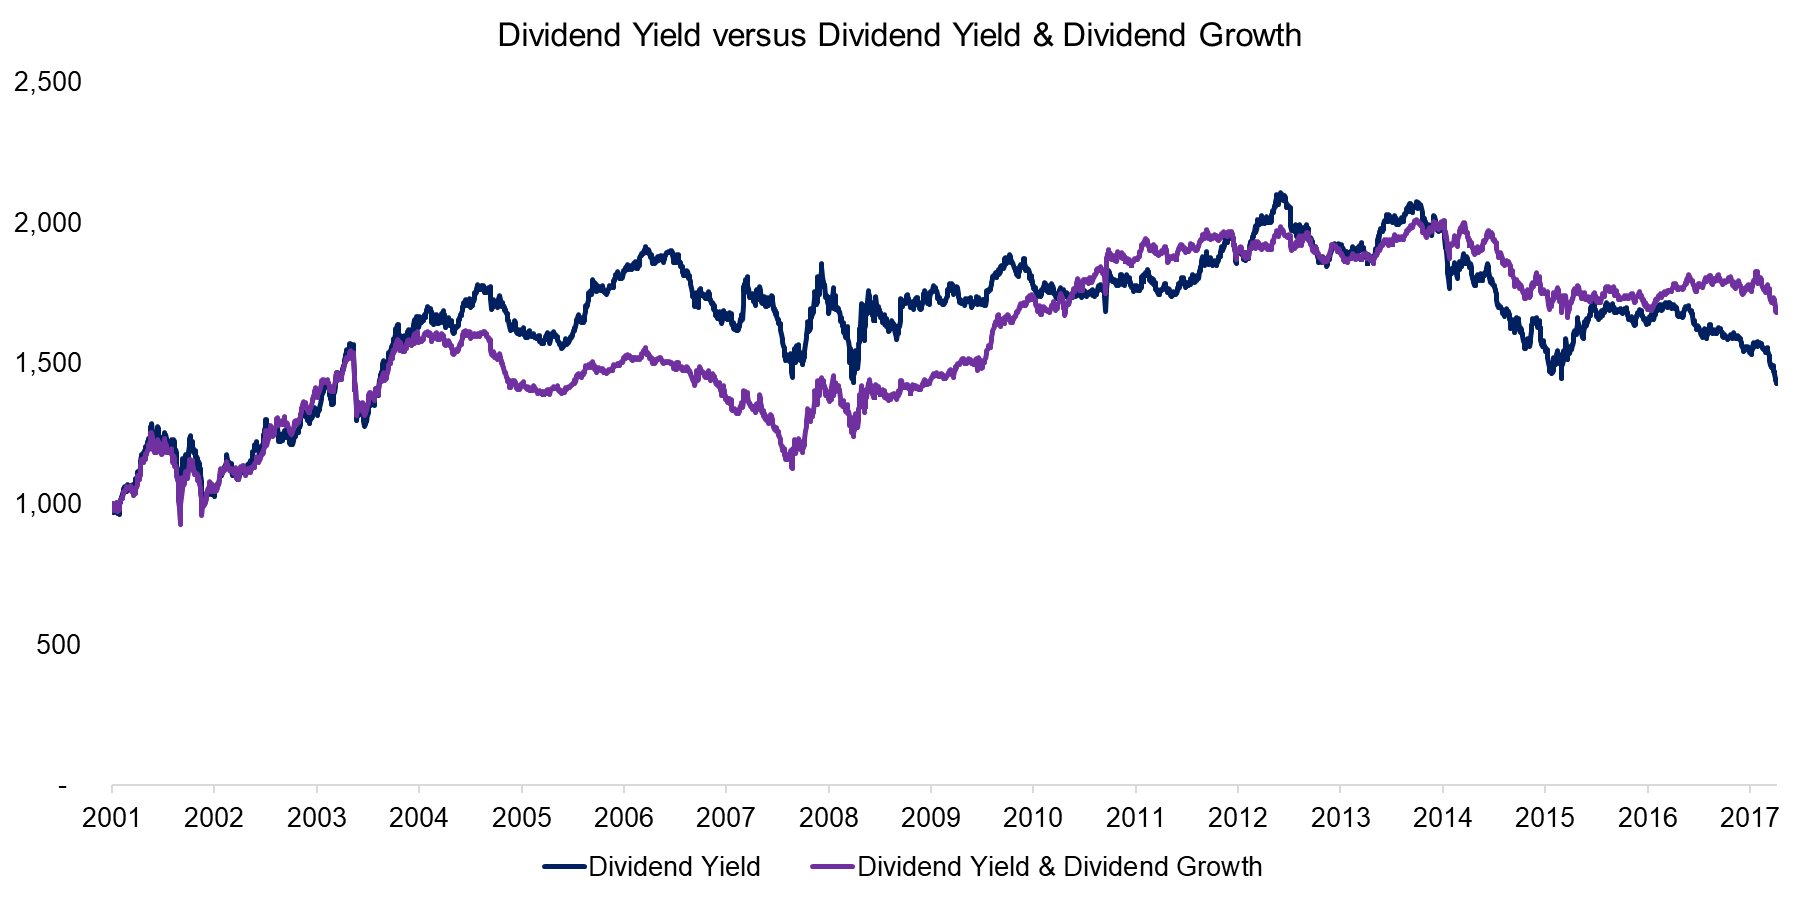 Dividend Yield versus Dividend Yield & Dividend Growth